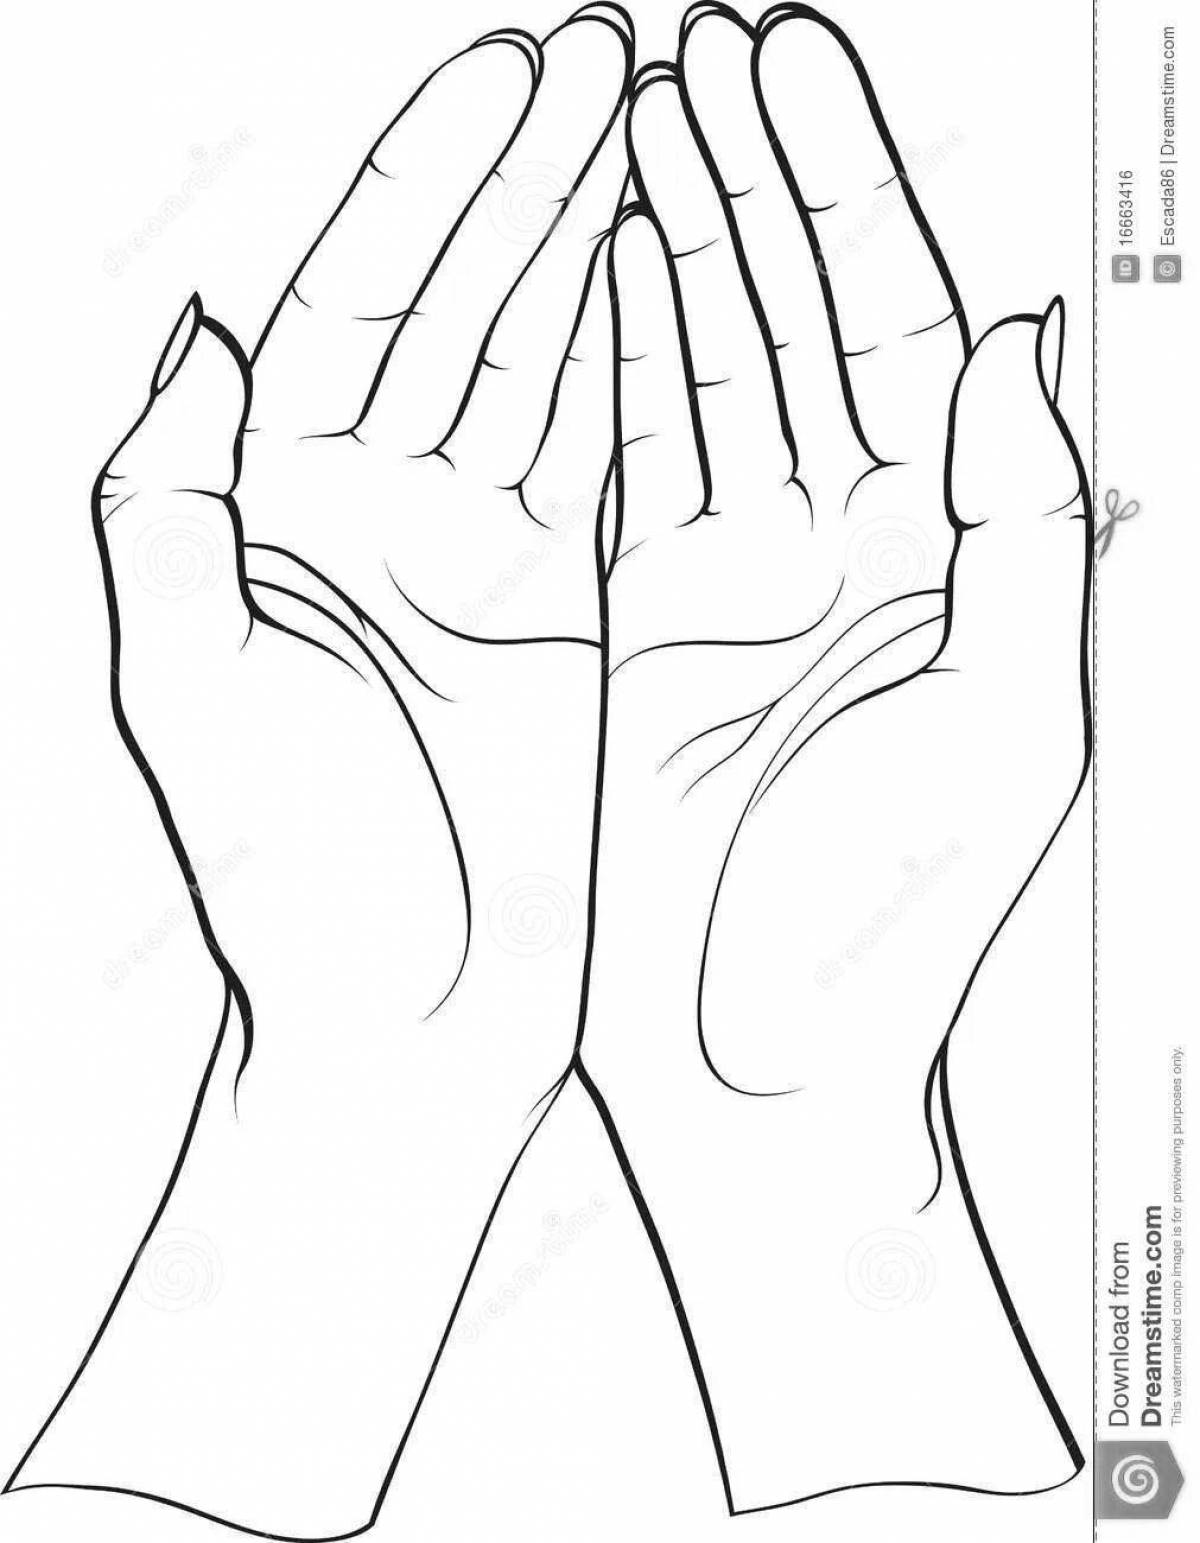 2 hands #3